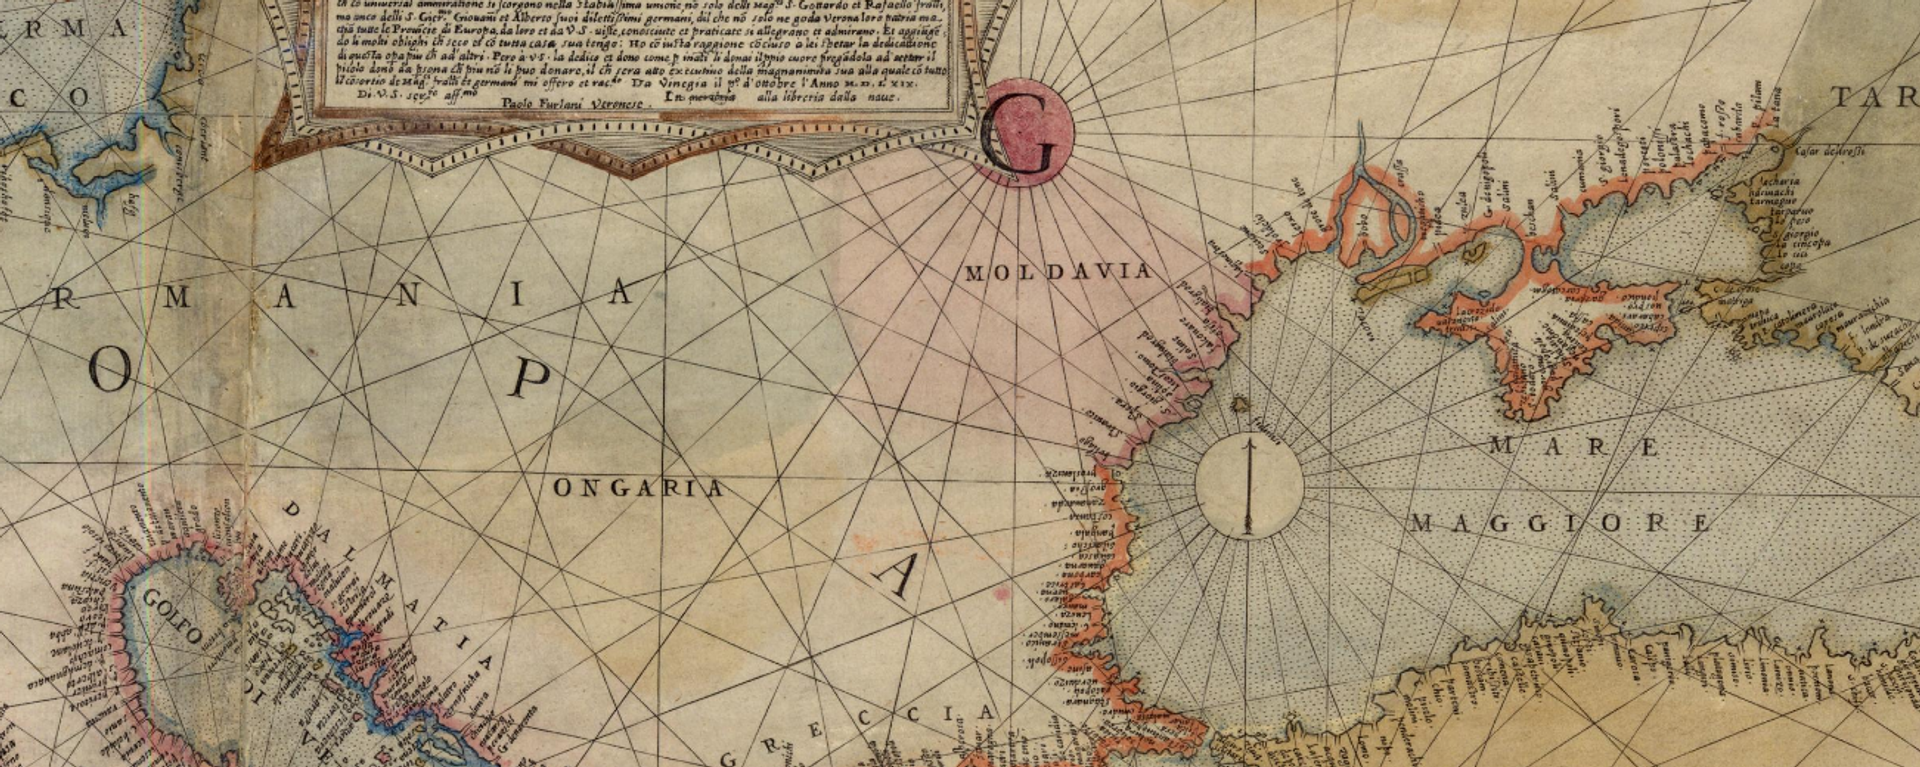 Молдавия на карте Европы П.Форлани, 1569 год. - Sputnik Молдова, 1920, 21.02.2021